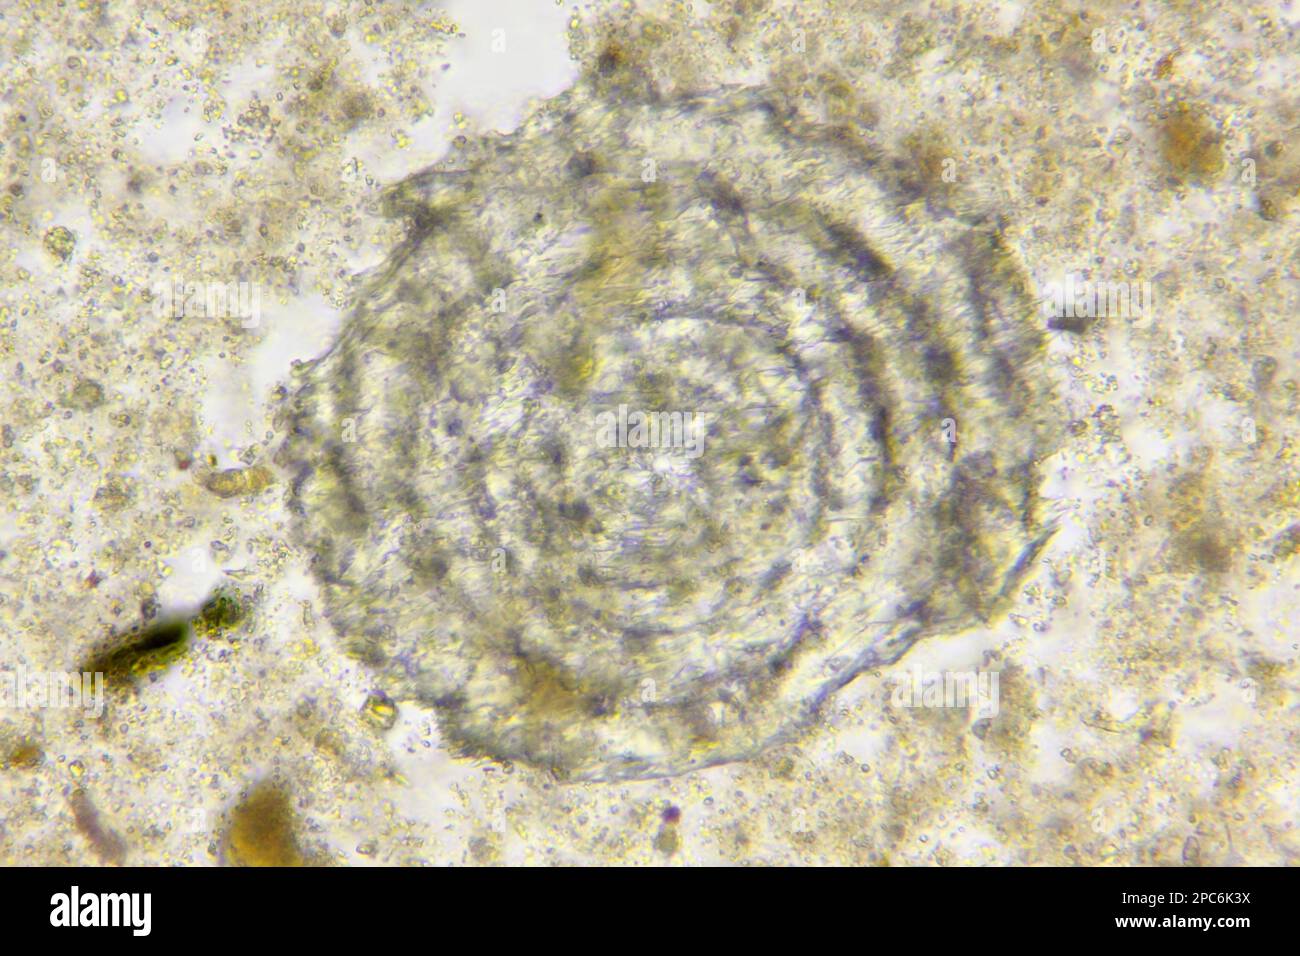 Mikroskopische Betrachtung unspezifizierter mariner Mikrofossile aus silurischem Kalkstein. Hellfeldbeleuchtung. Stockfoto